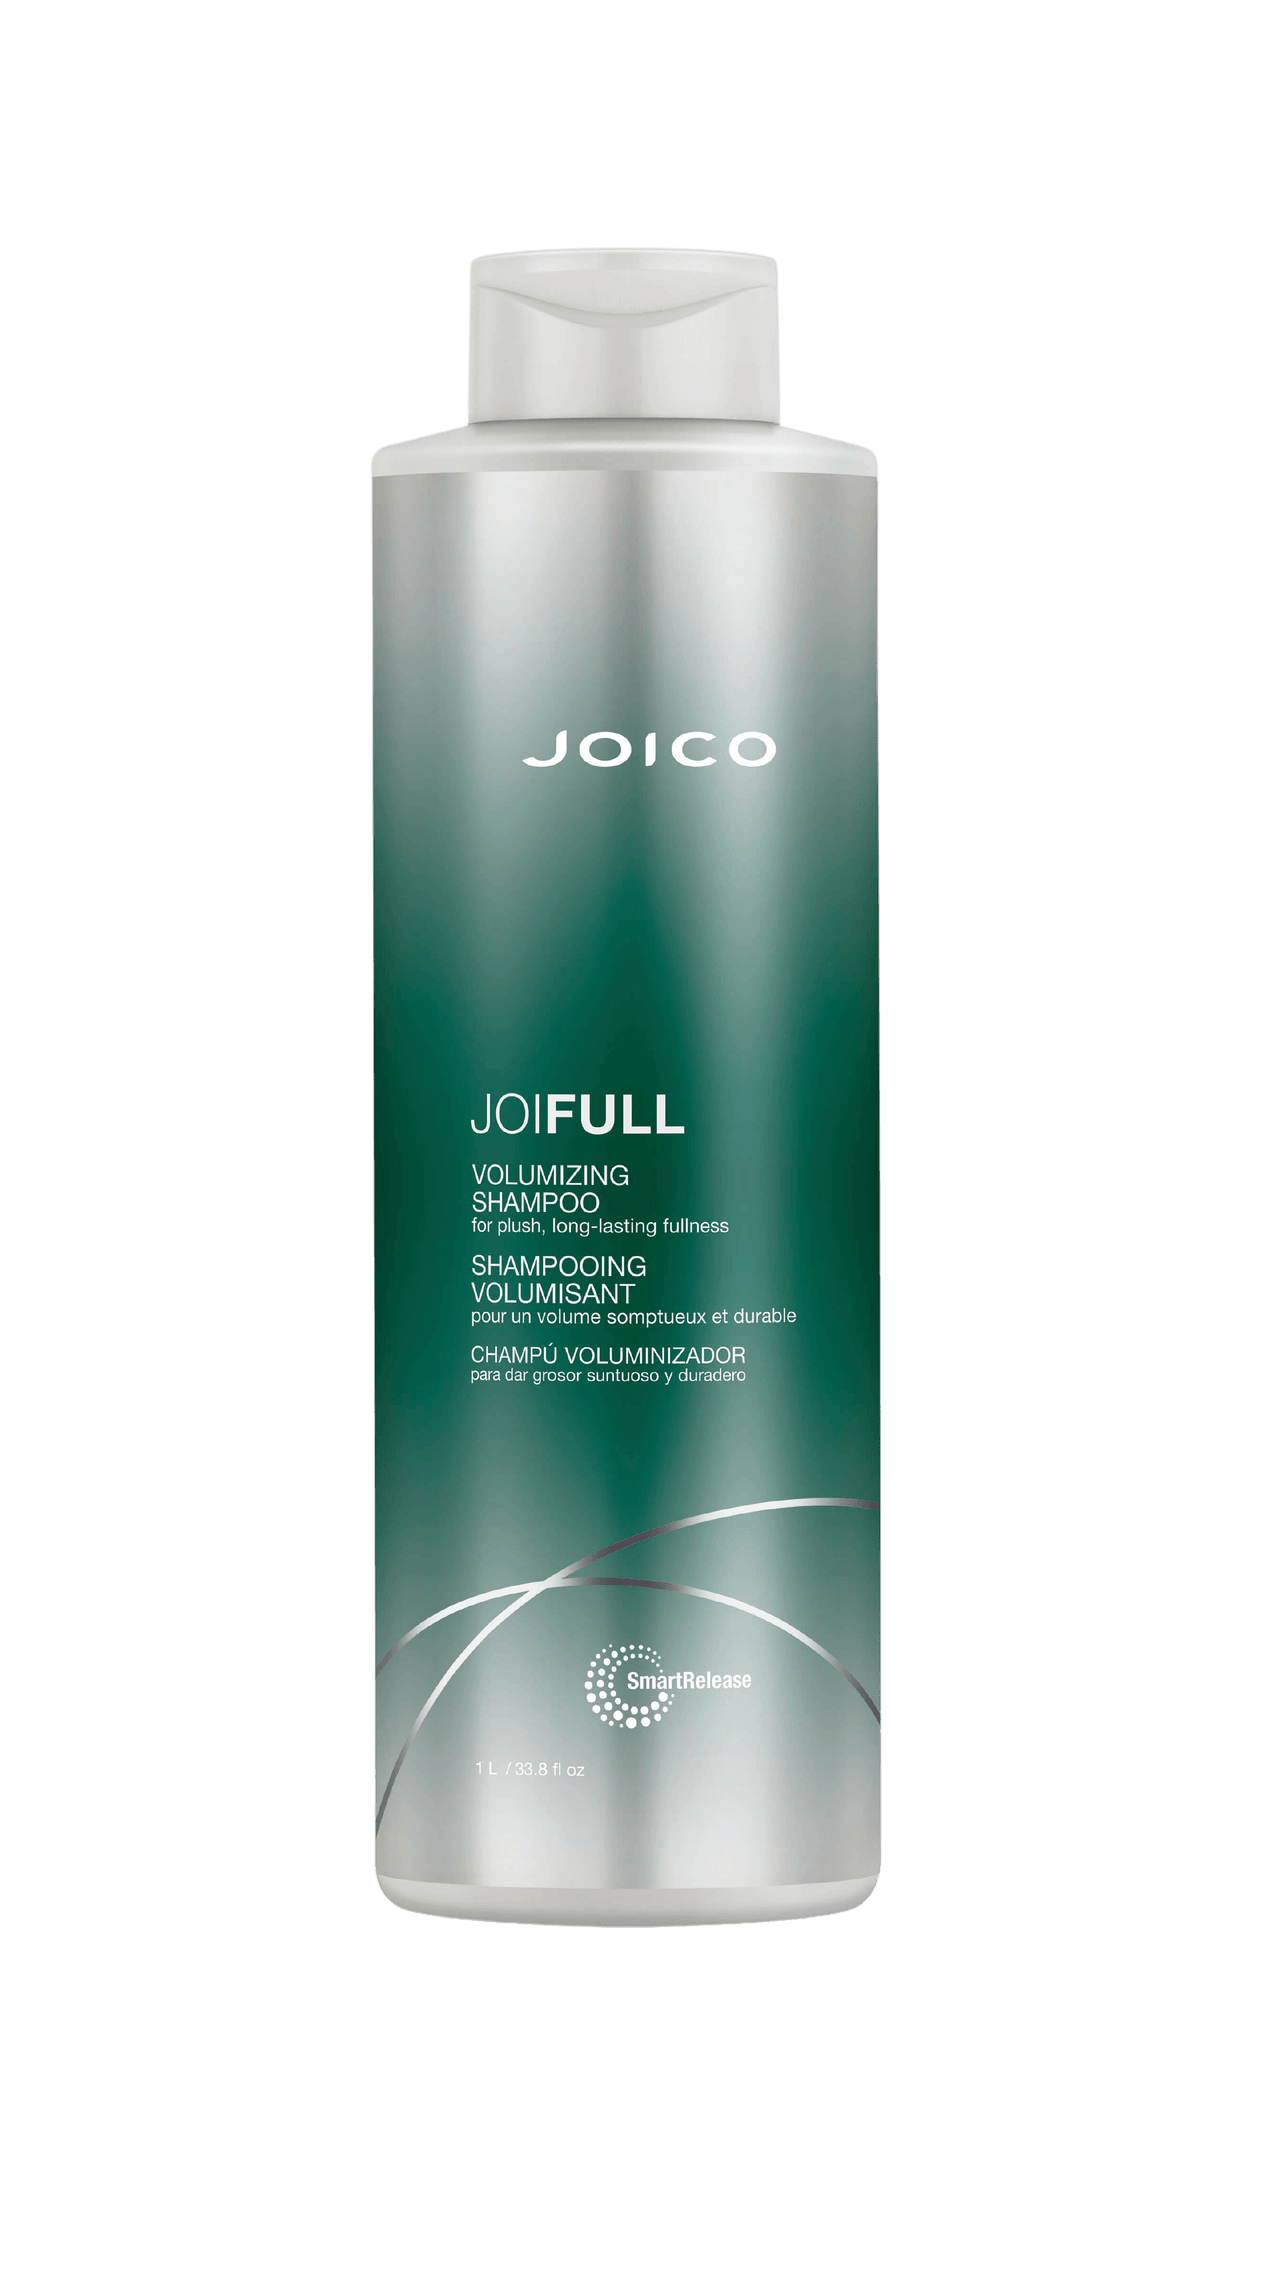 Joico Joifull Volumizing Shampoo 33.8oz Bottle